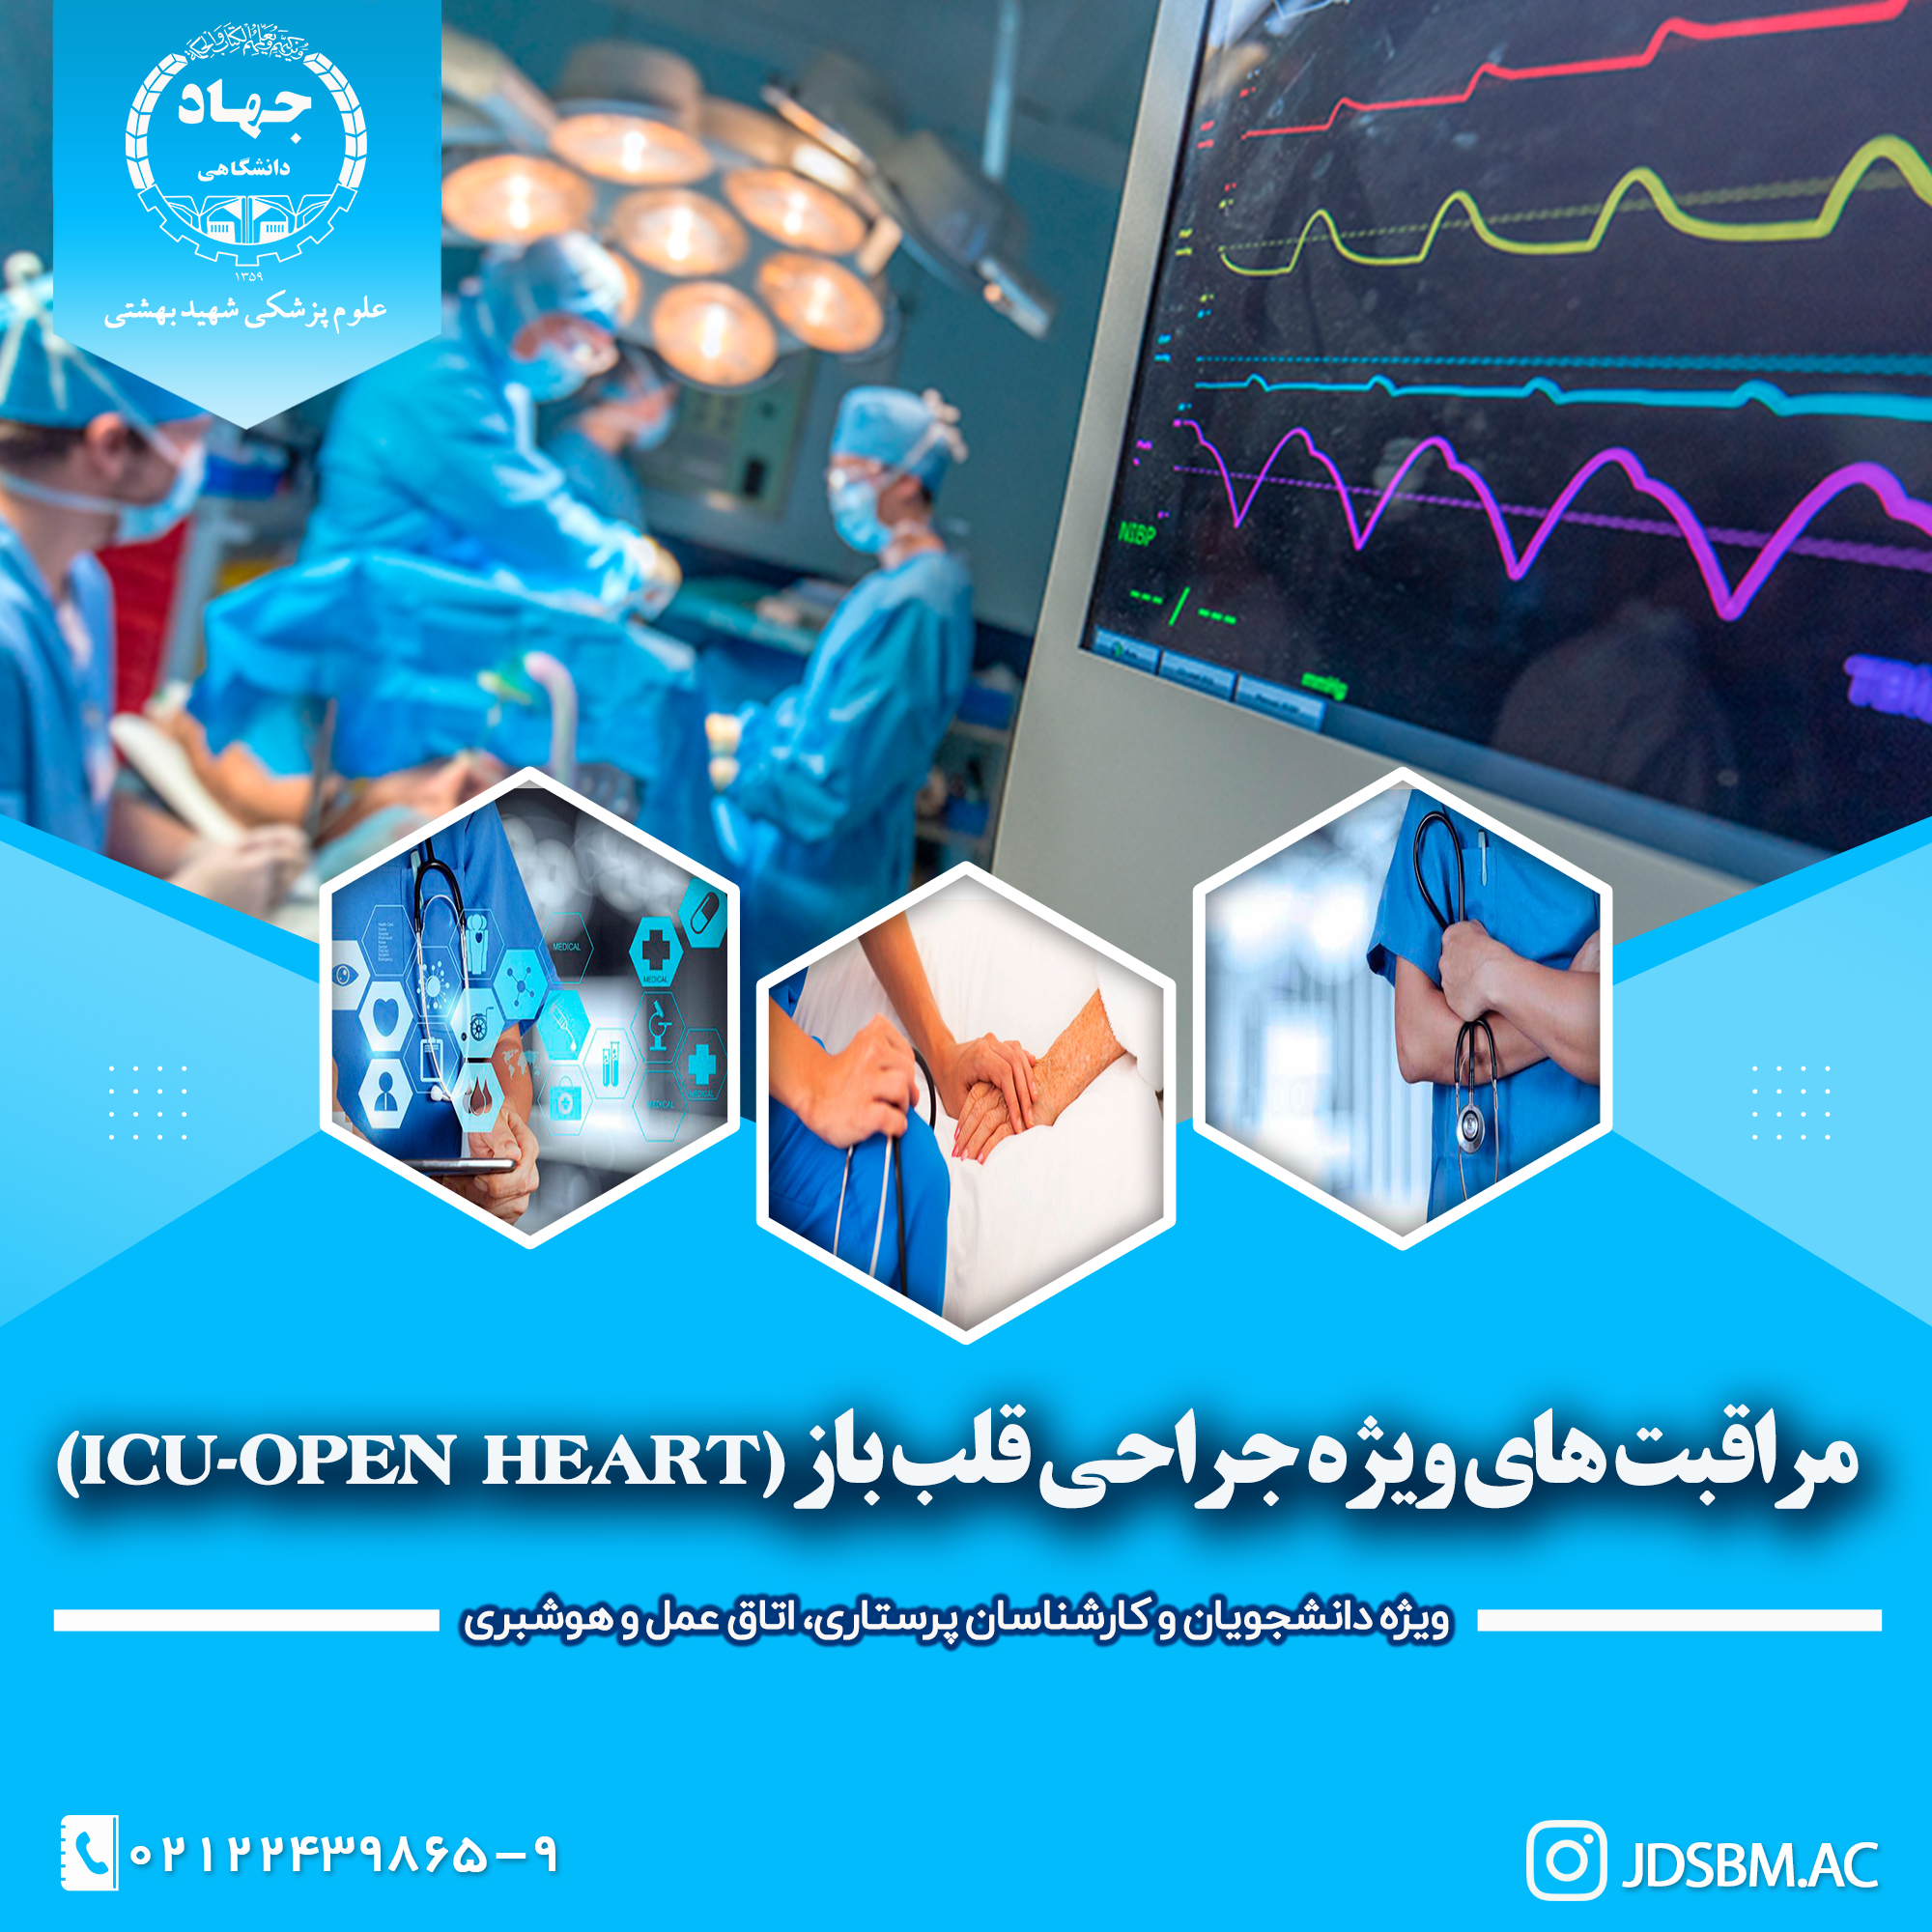 مراقبت های ویژه جراحی قلب باز بزرگسال (ICU-OH)